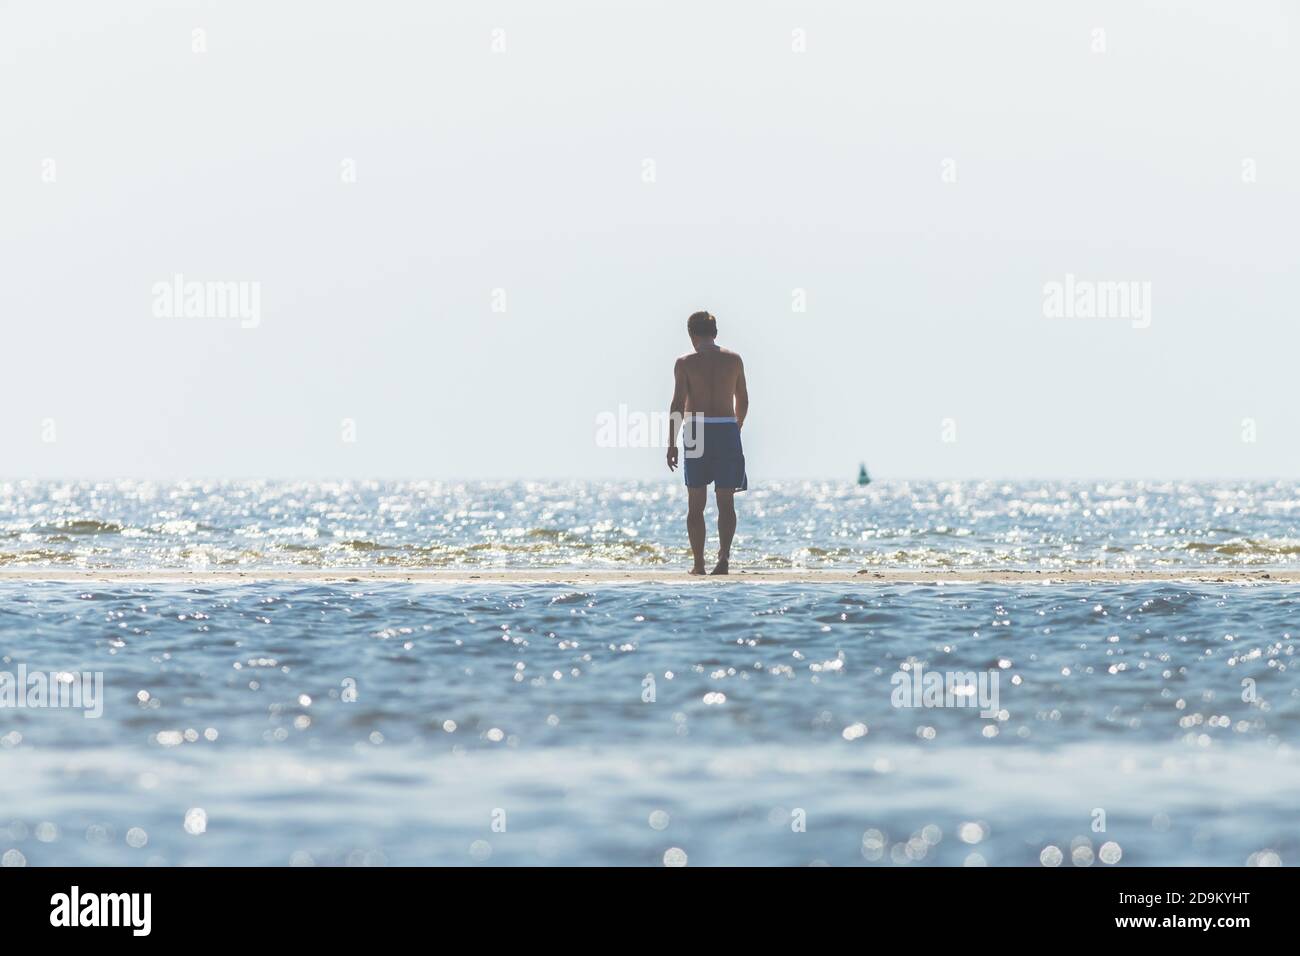 Beach Recreation - l'uomo in tronchi da bagno si affaccia sull'acqua e guarda le onde. Foto Stock